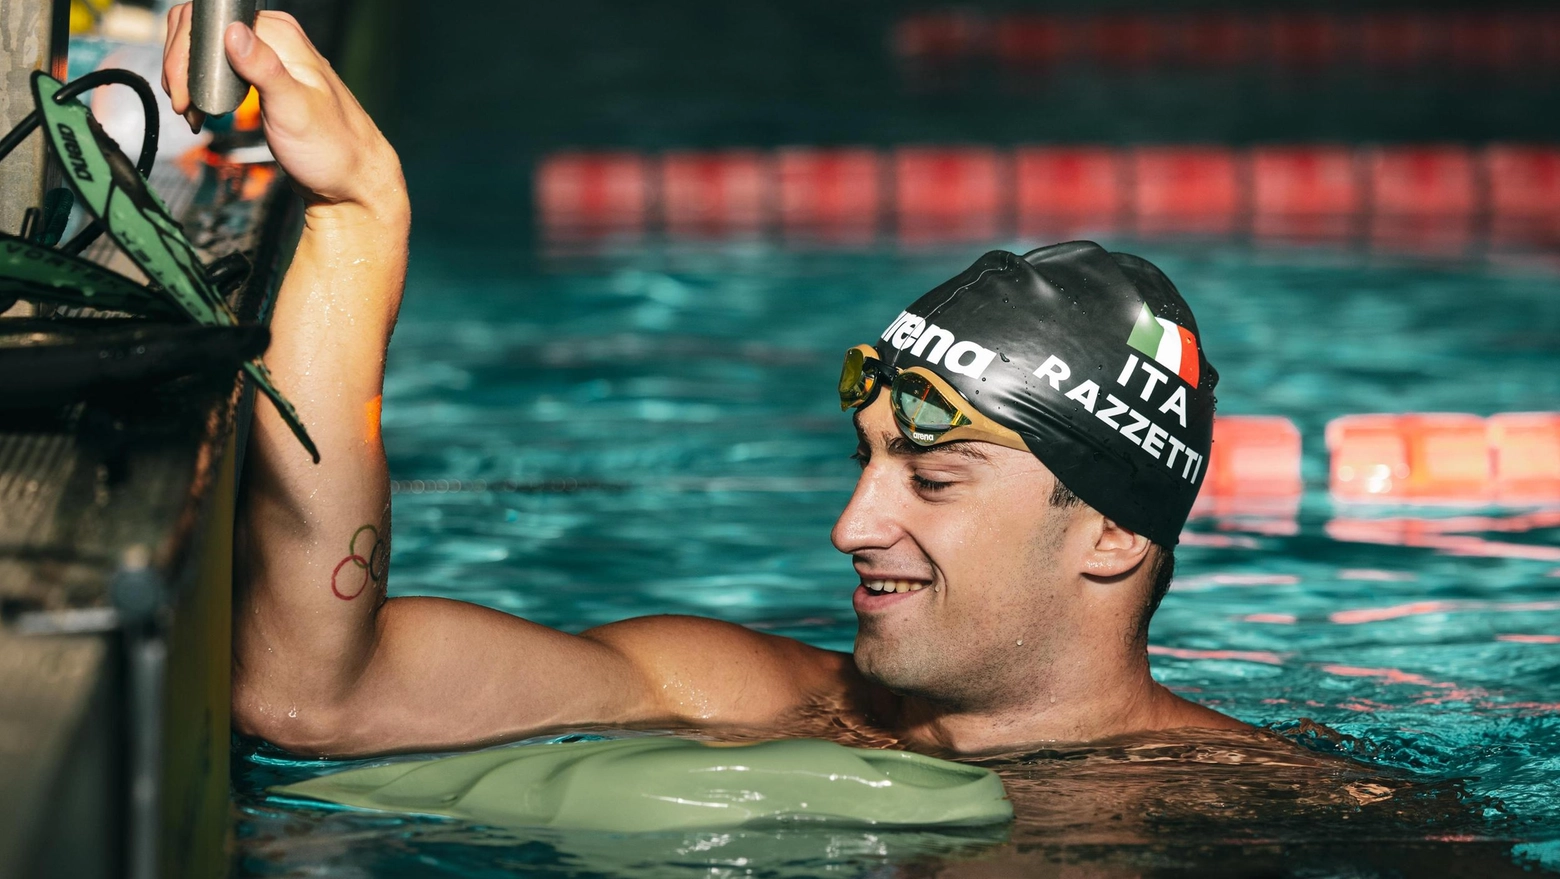 Razzetti è già decollato verso le Olimpiadi: "Sogno un podio come il mio idolo Vale"